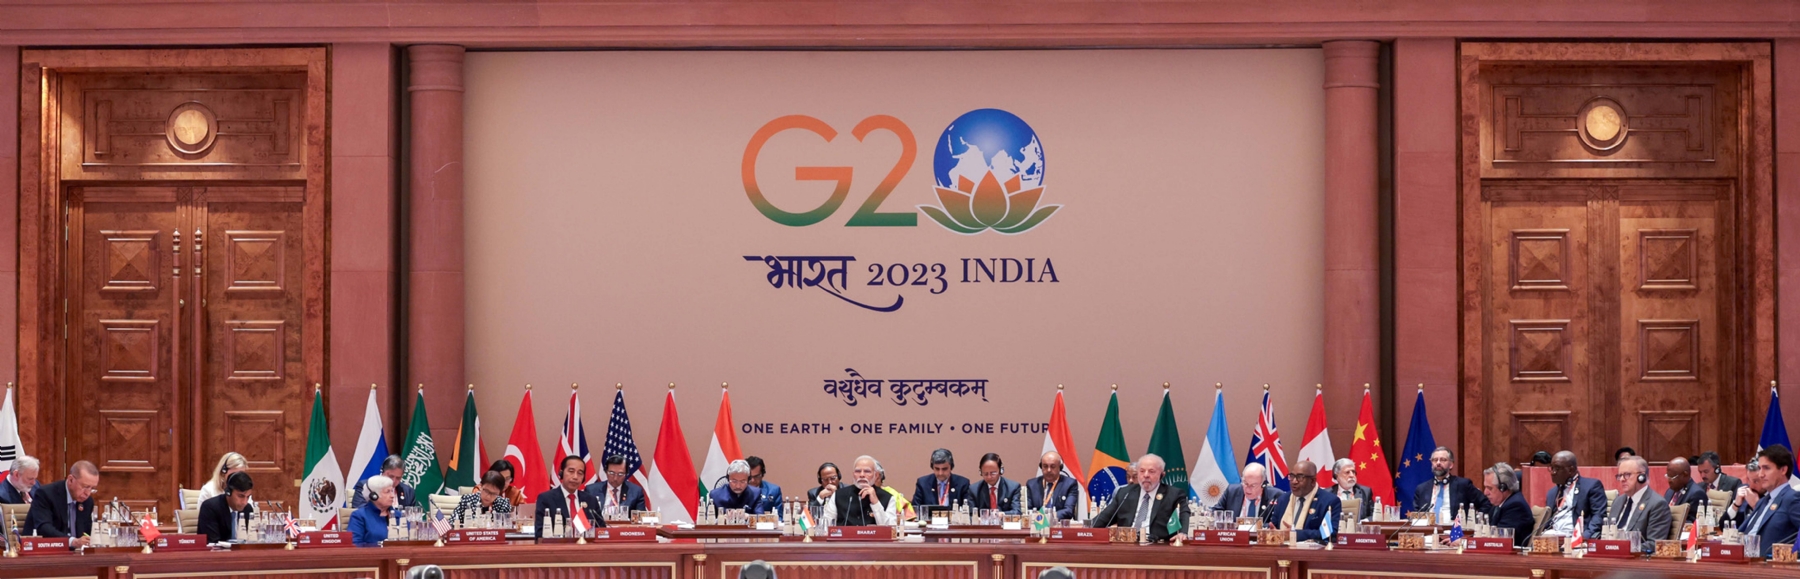 नई दिल्ली में 10 सितंबर 2023 को प्रगति मैदान में भारत मंडपम मे जी20 शिखर सम्मेलन को प्रधान मंत्री नरेन्द्र मोदी ने समापन समारोह को संबोधित करते हुए। हिन्दुस्थान समाचार/ फोटो गणेश बिष्ट